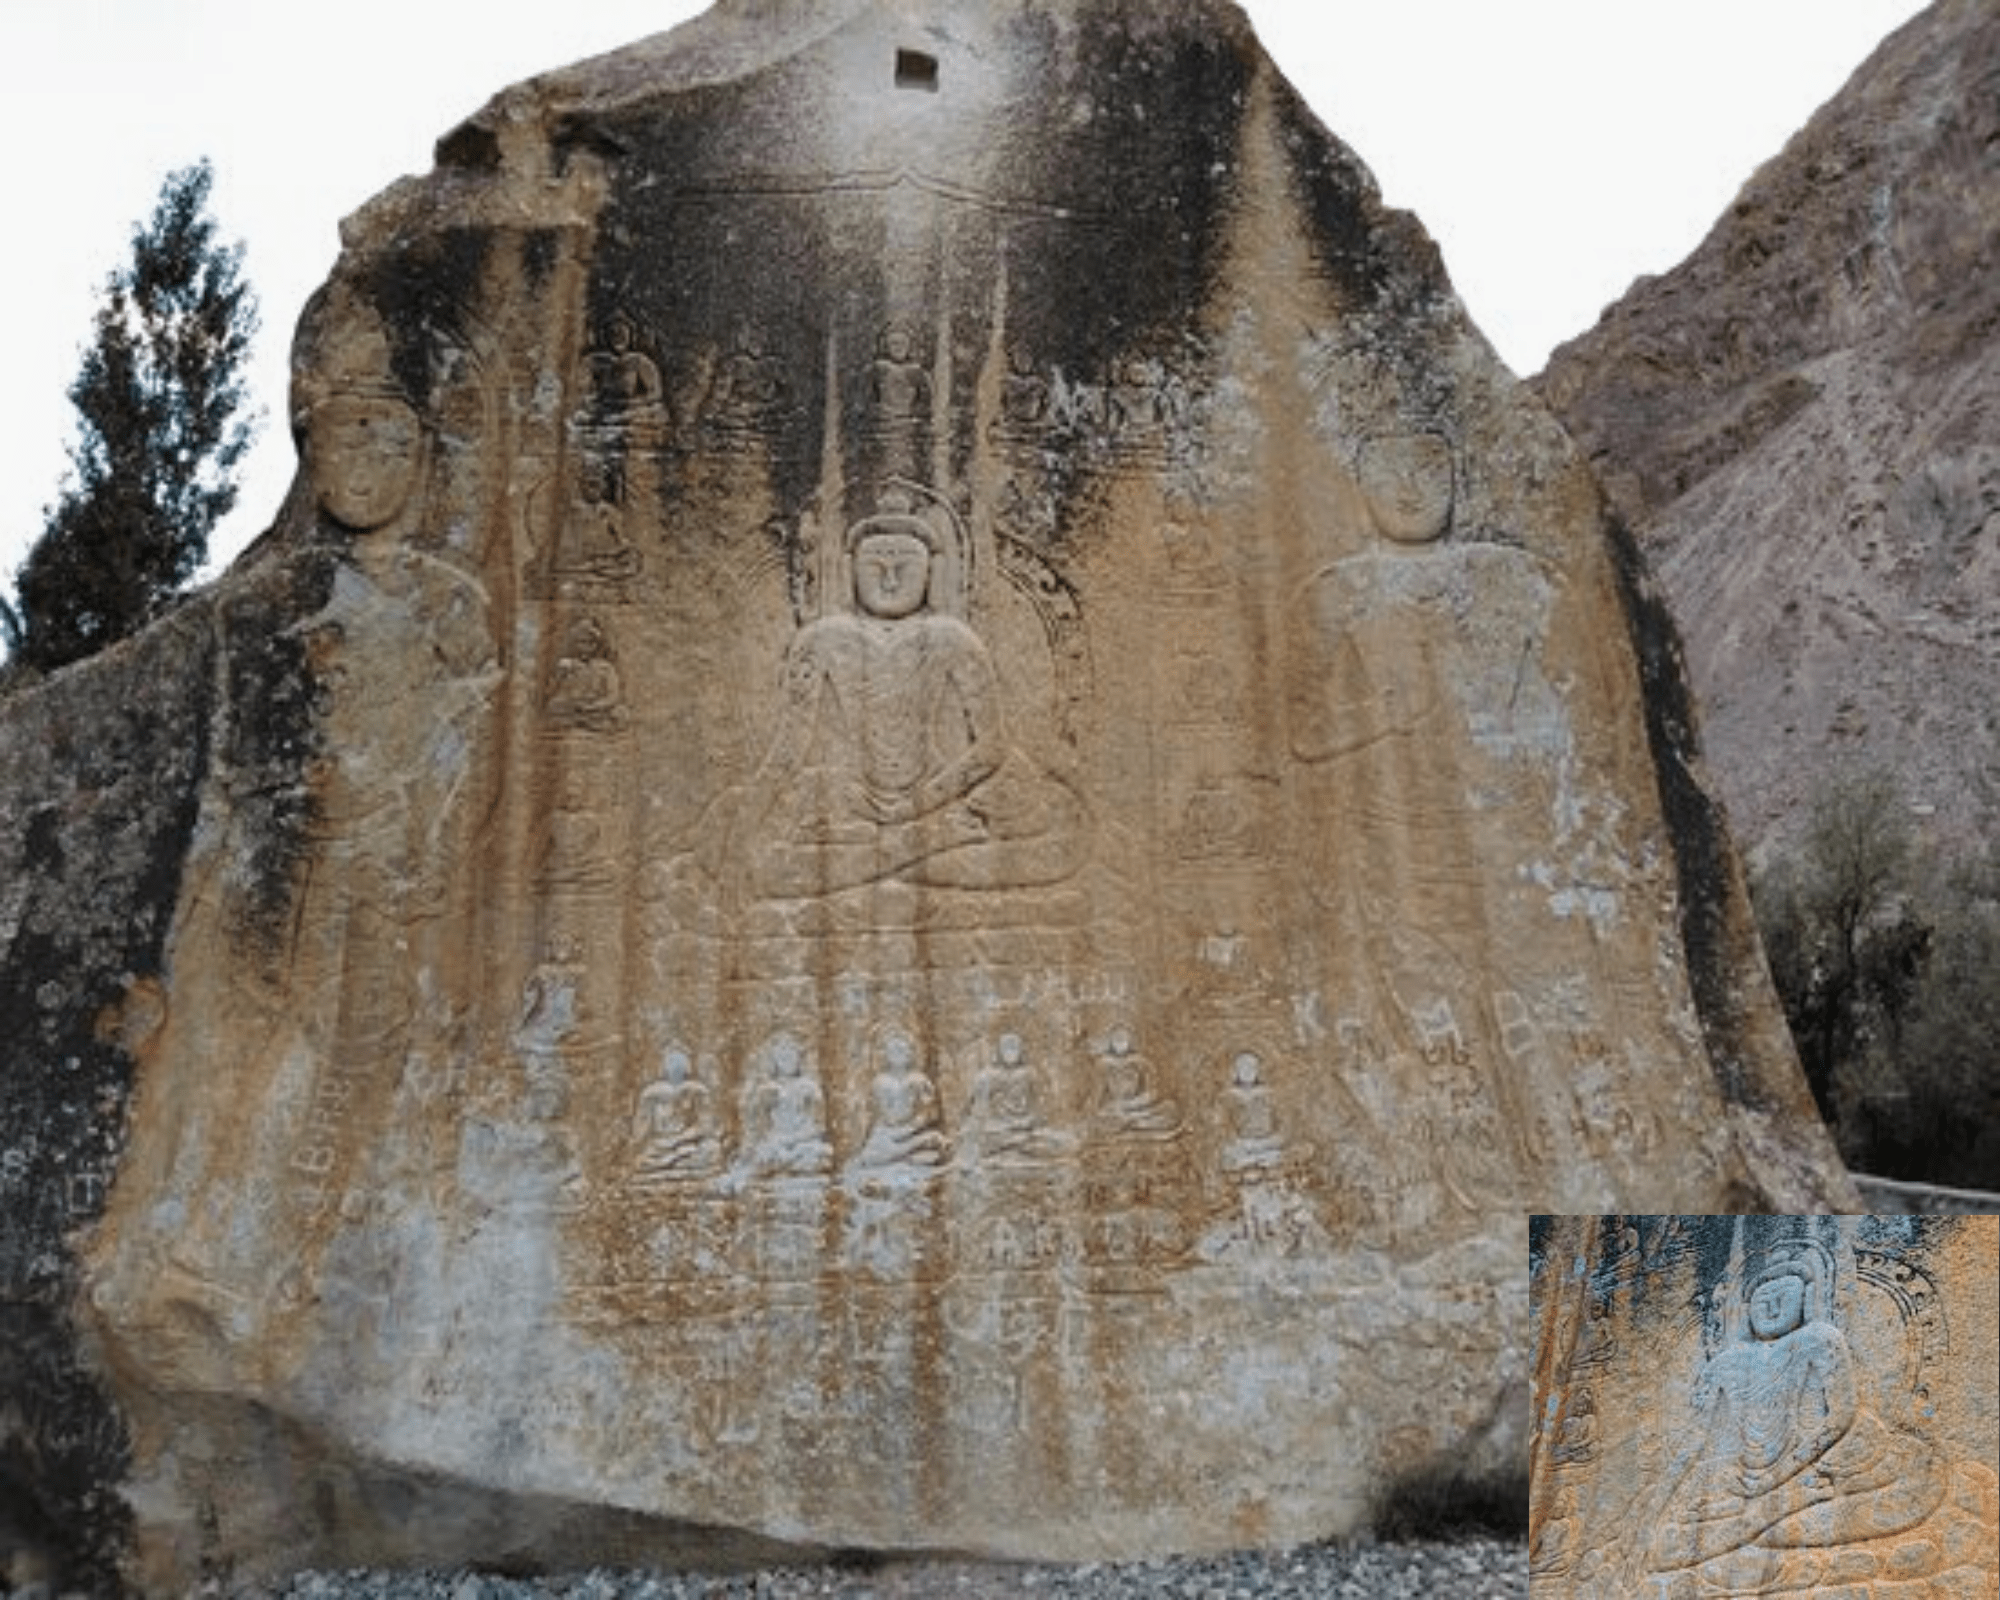 Manthal Buddha Rock Skardu Pakistan Gilgit